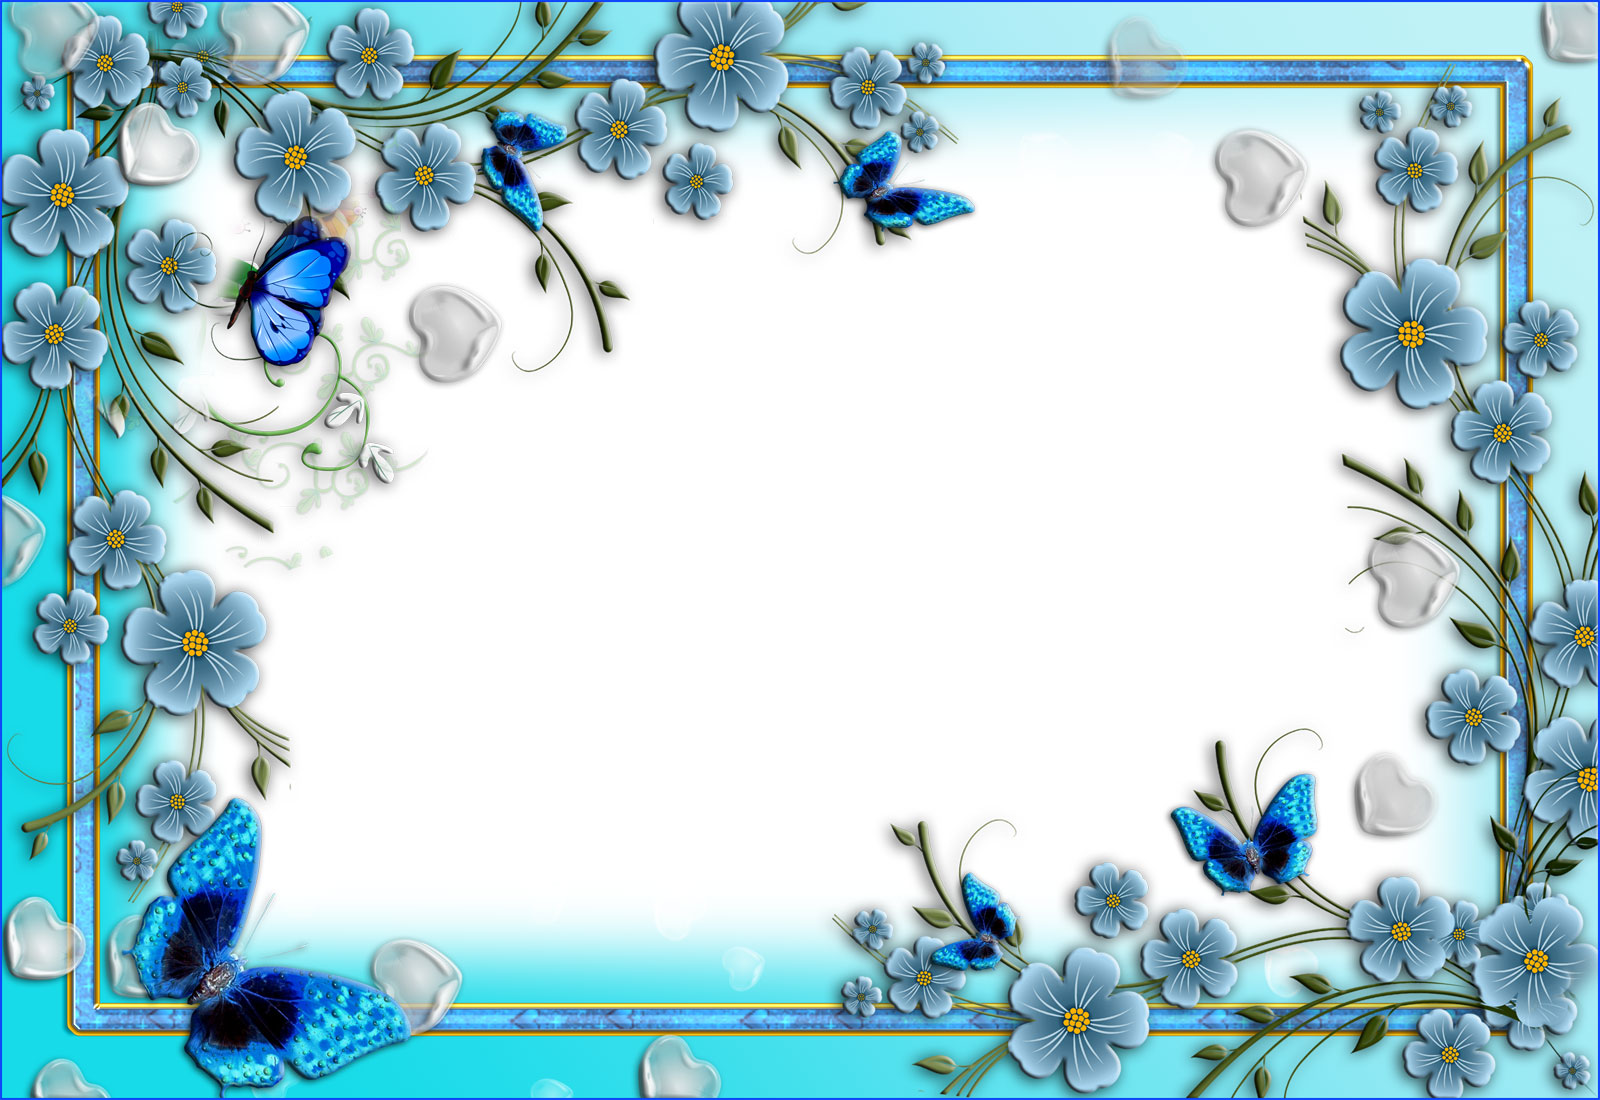 青い花のイラスト フリー素材 No 240 青い花と蝶